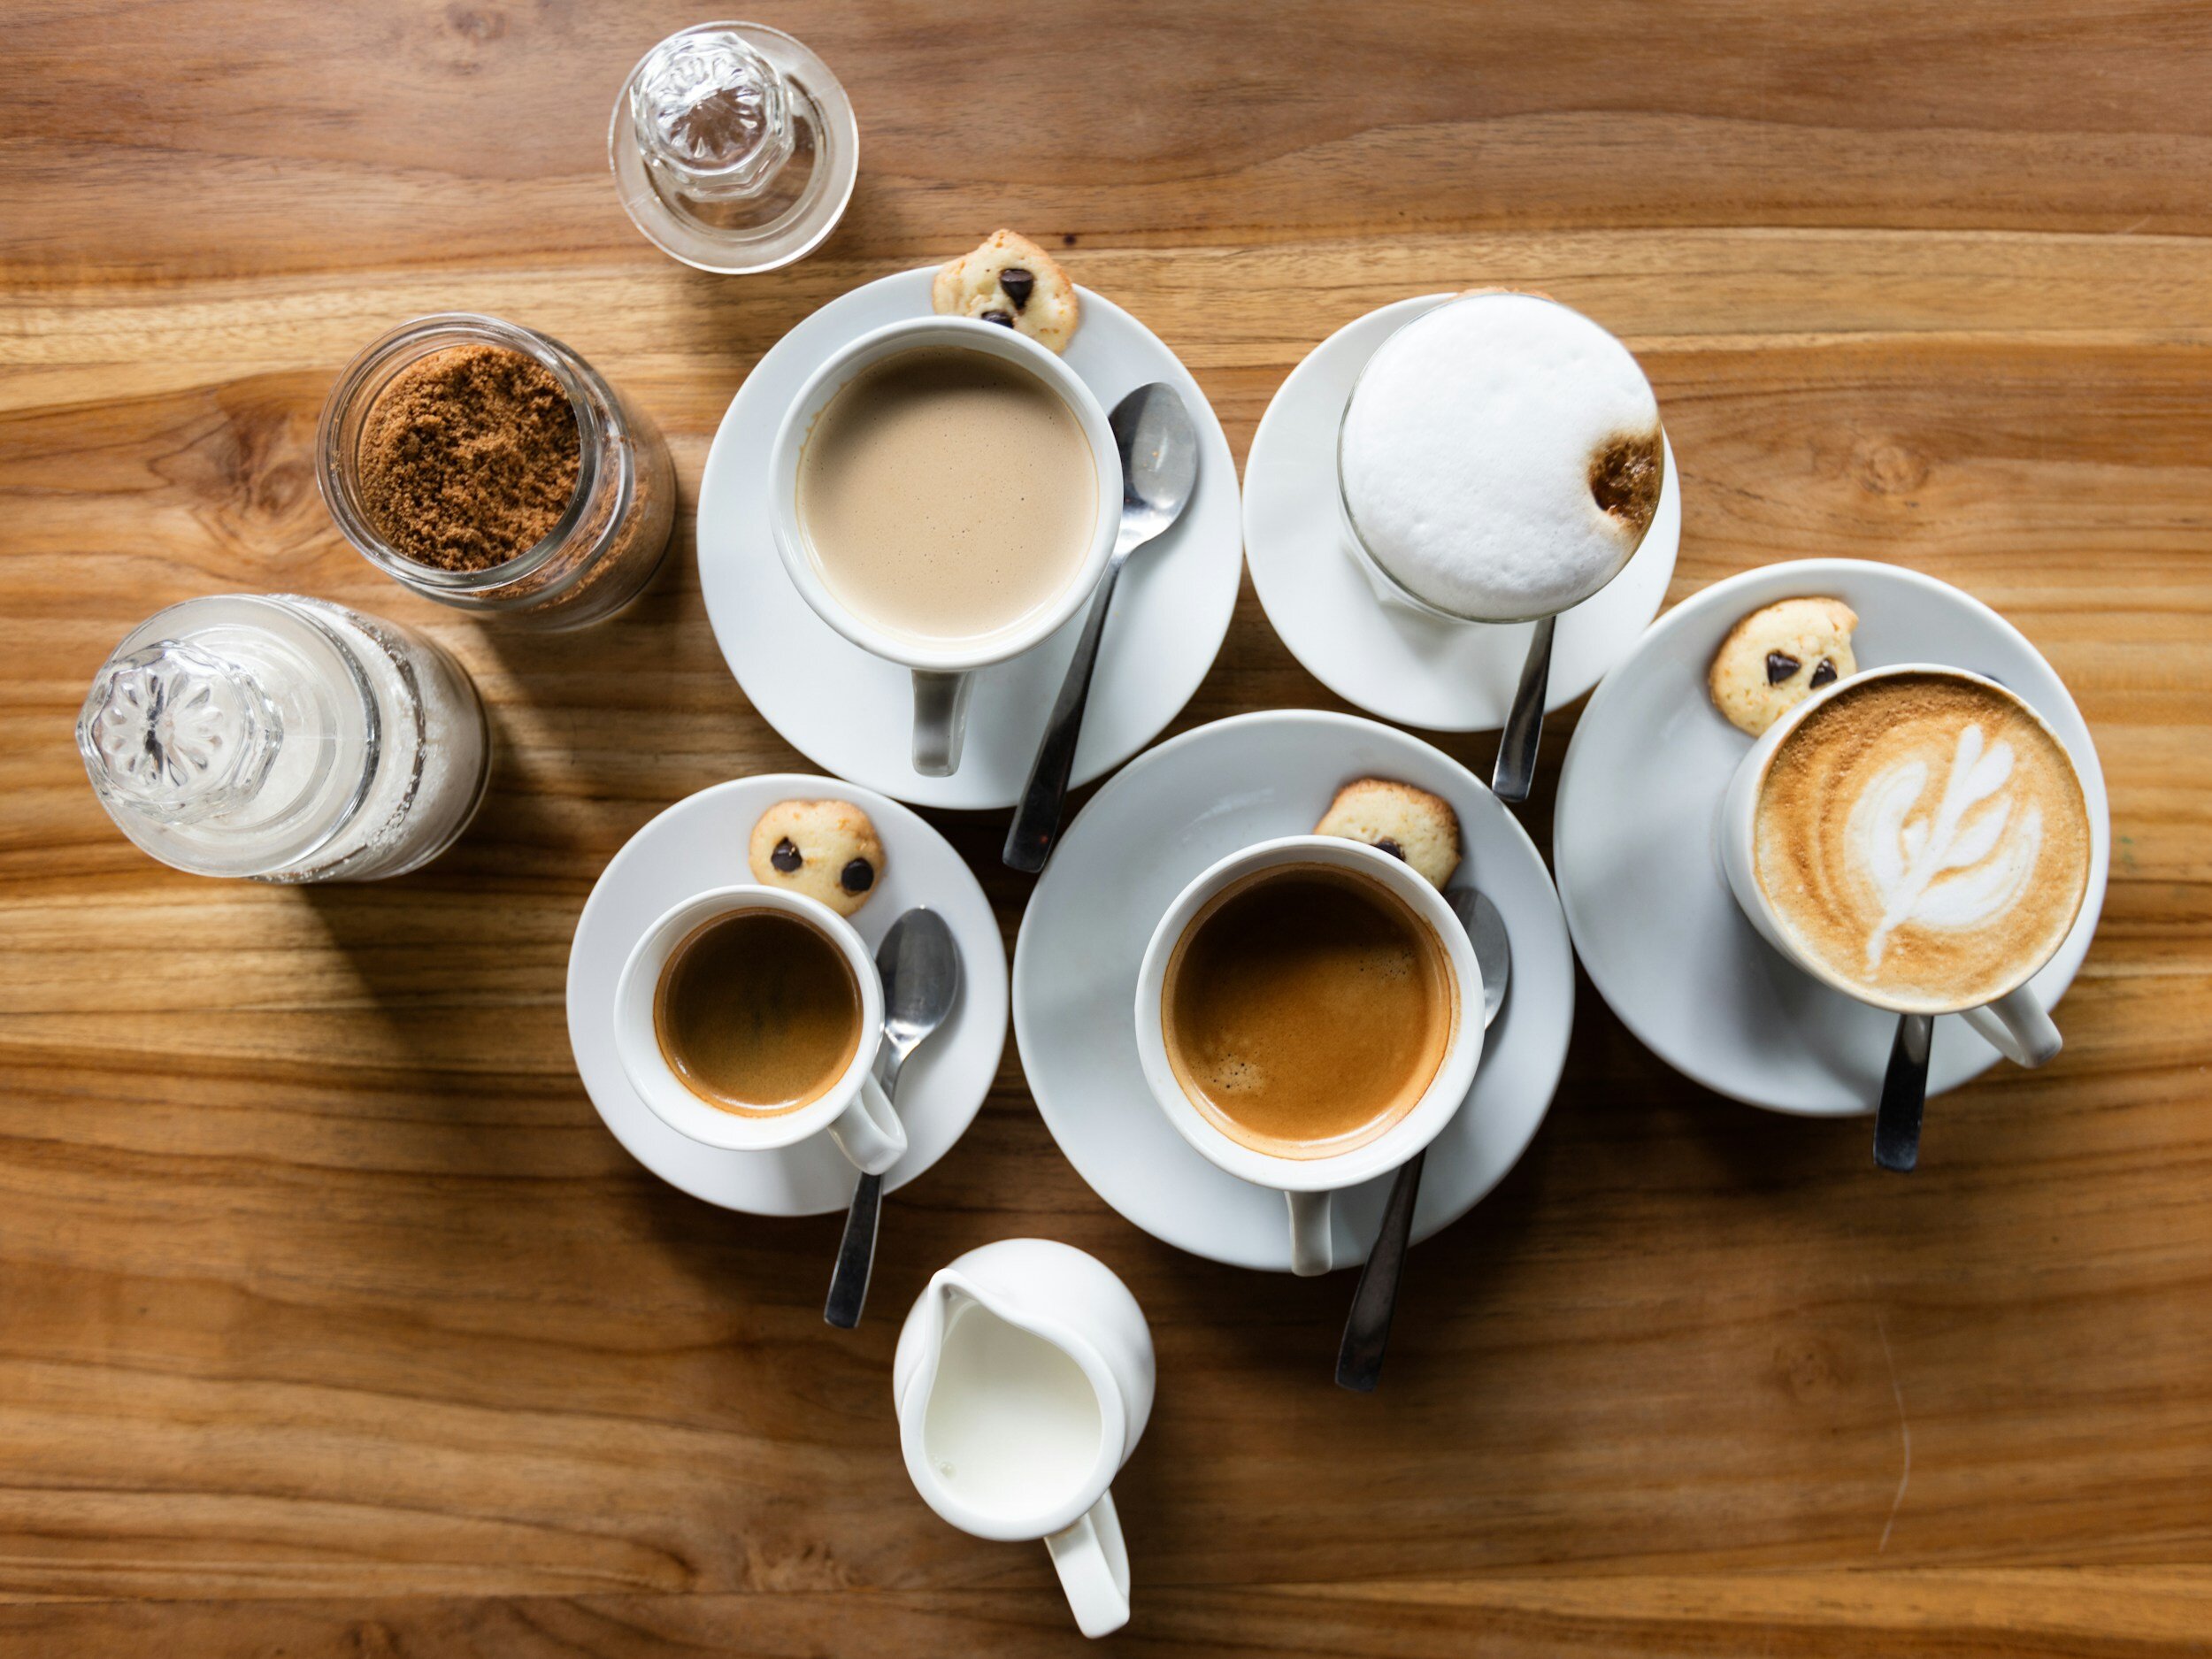 Coffee mugs on table